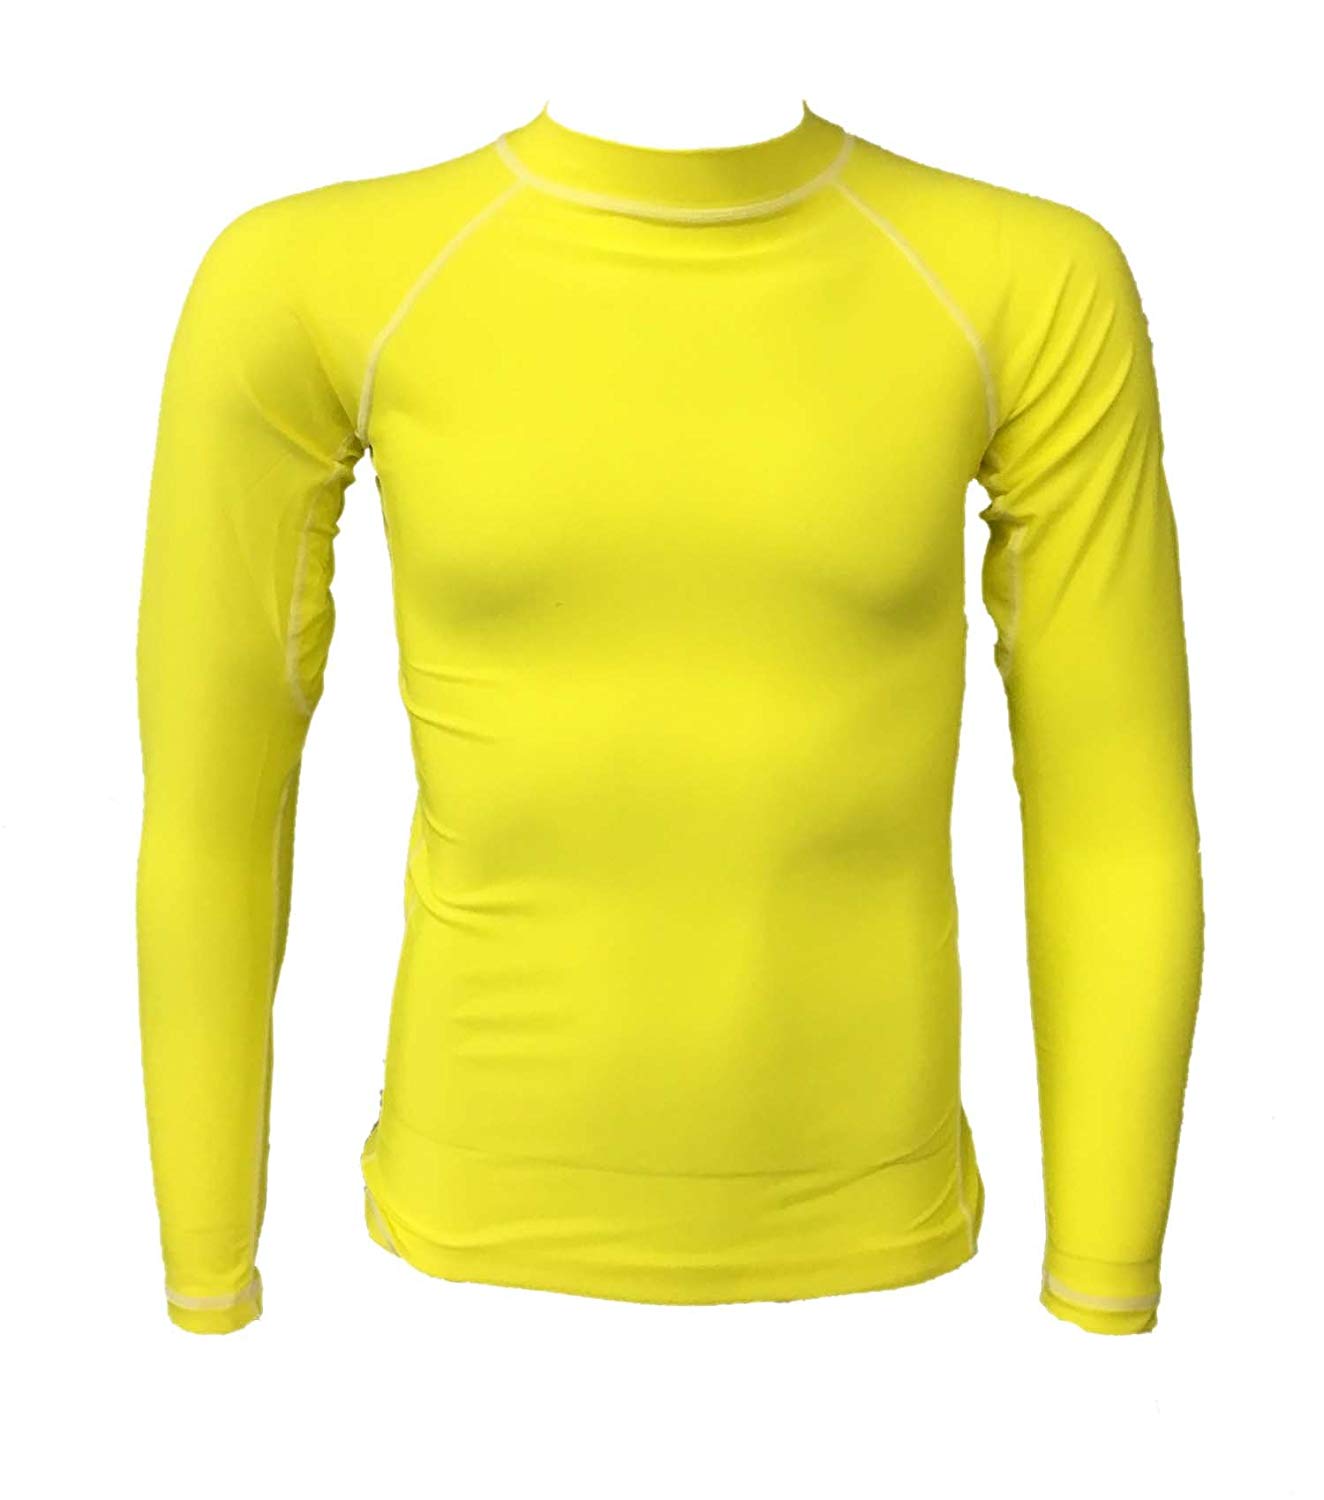 UnSponsored Adult Long Sleeve Neon Yellow Rashguard